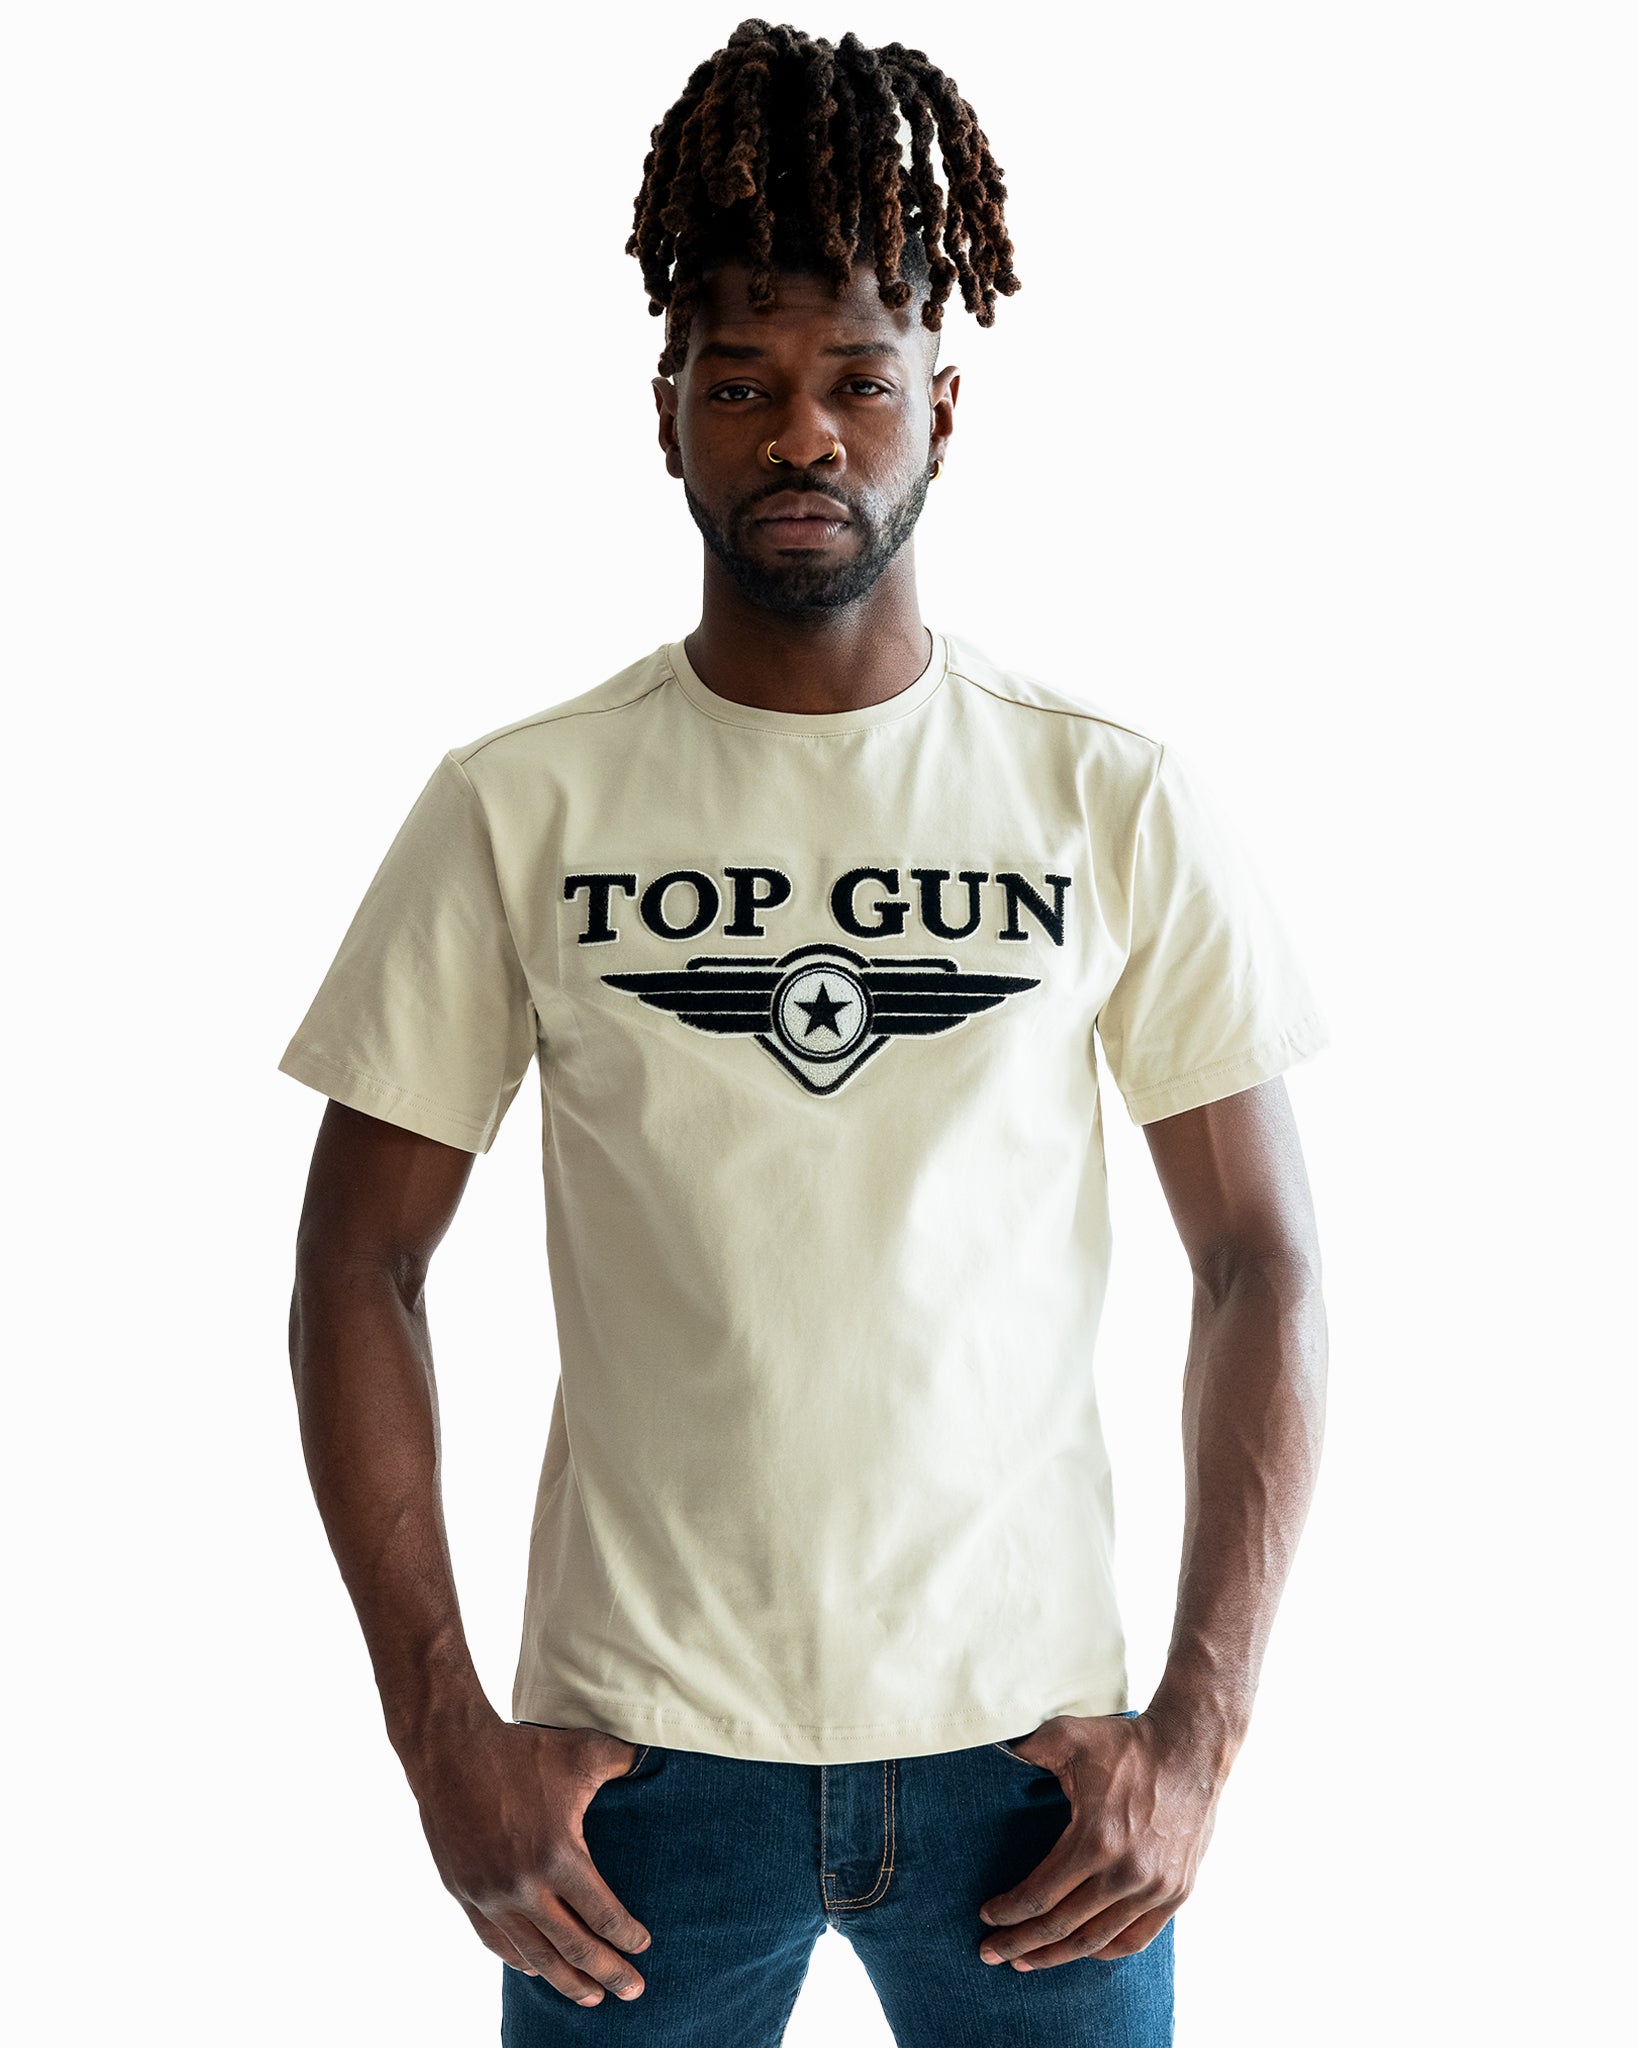 TOP GUN® CORONADO T-SHIRT, TOP GUN Clothing